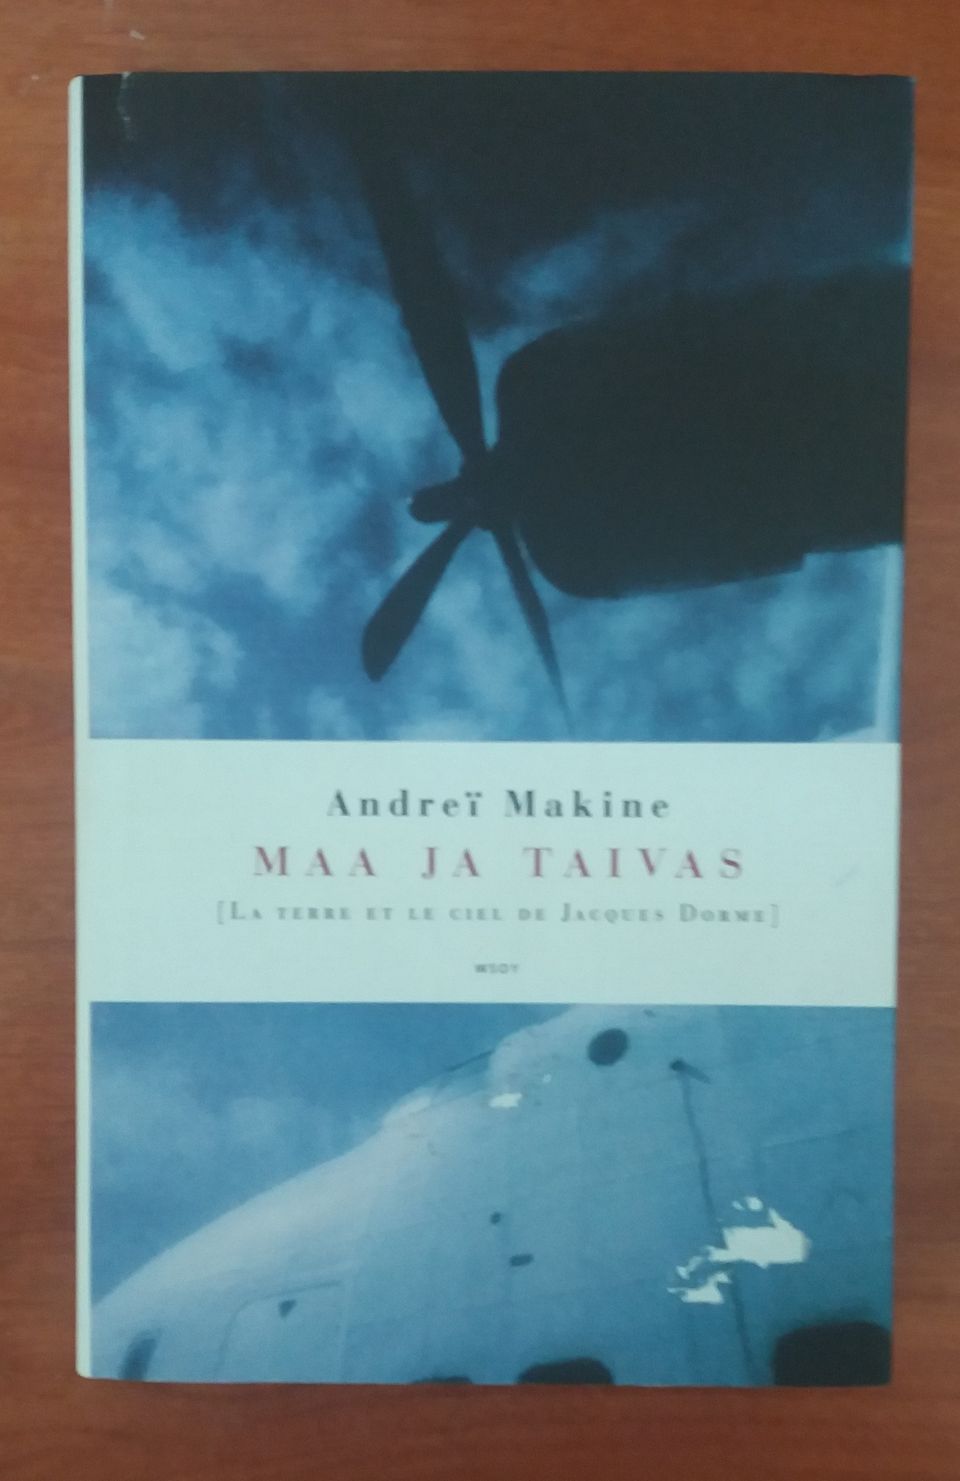 Andrei Makine MAA JA TAIVAS Wsoy 2004